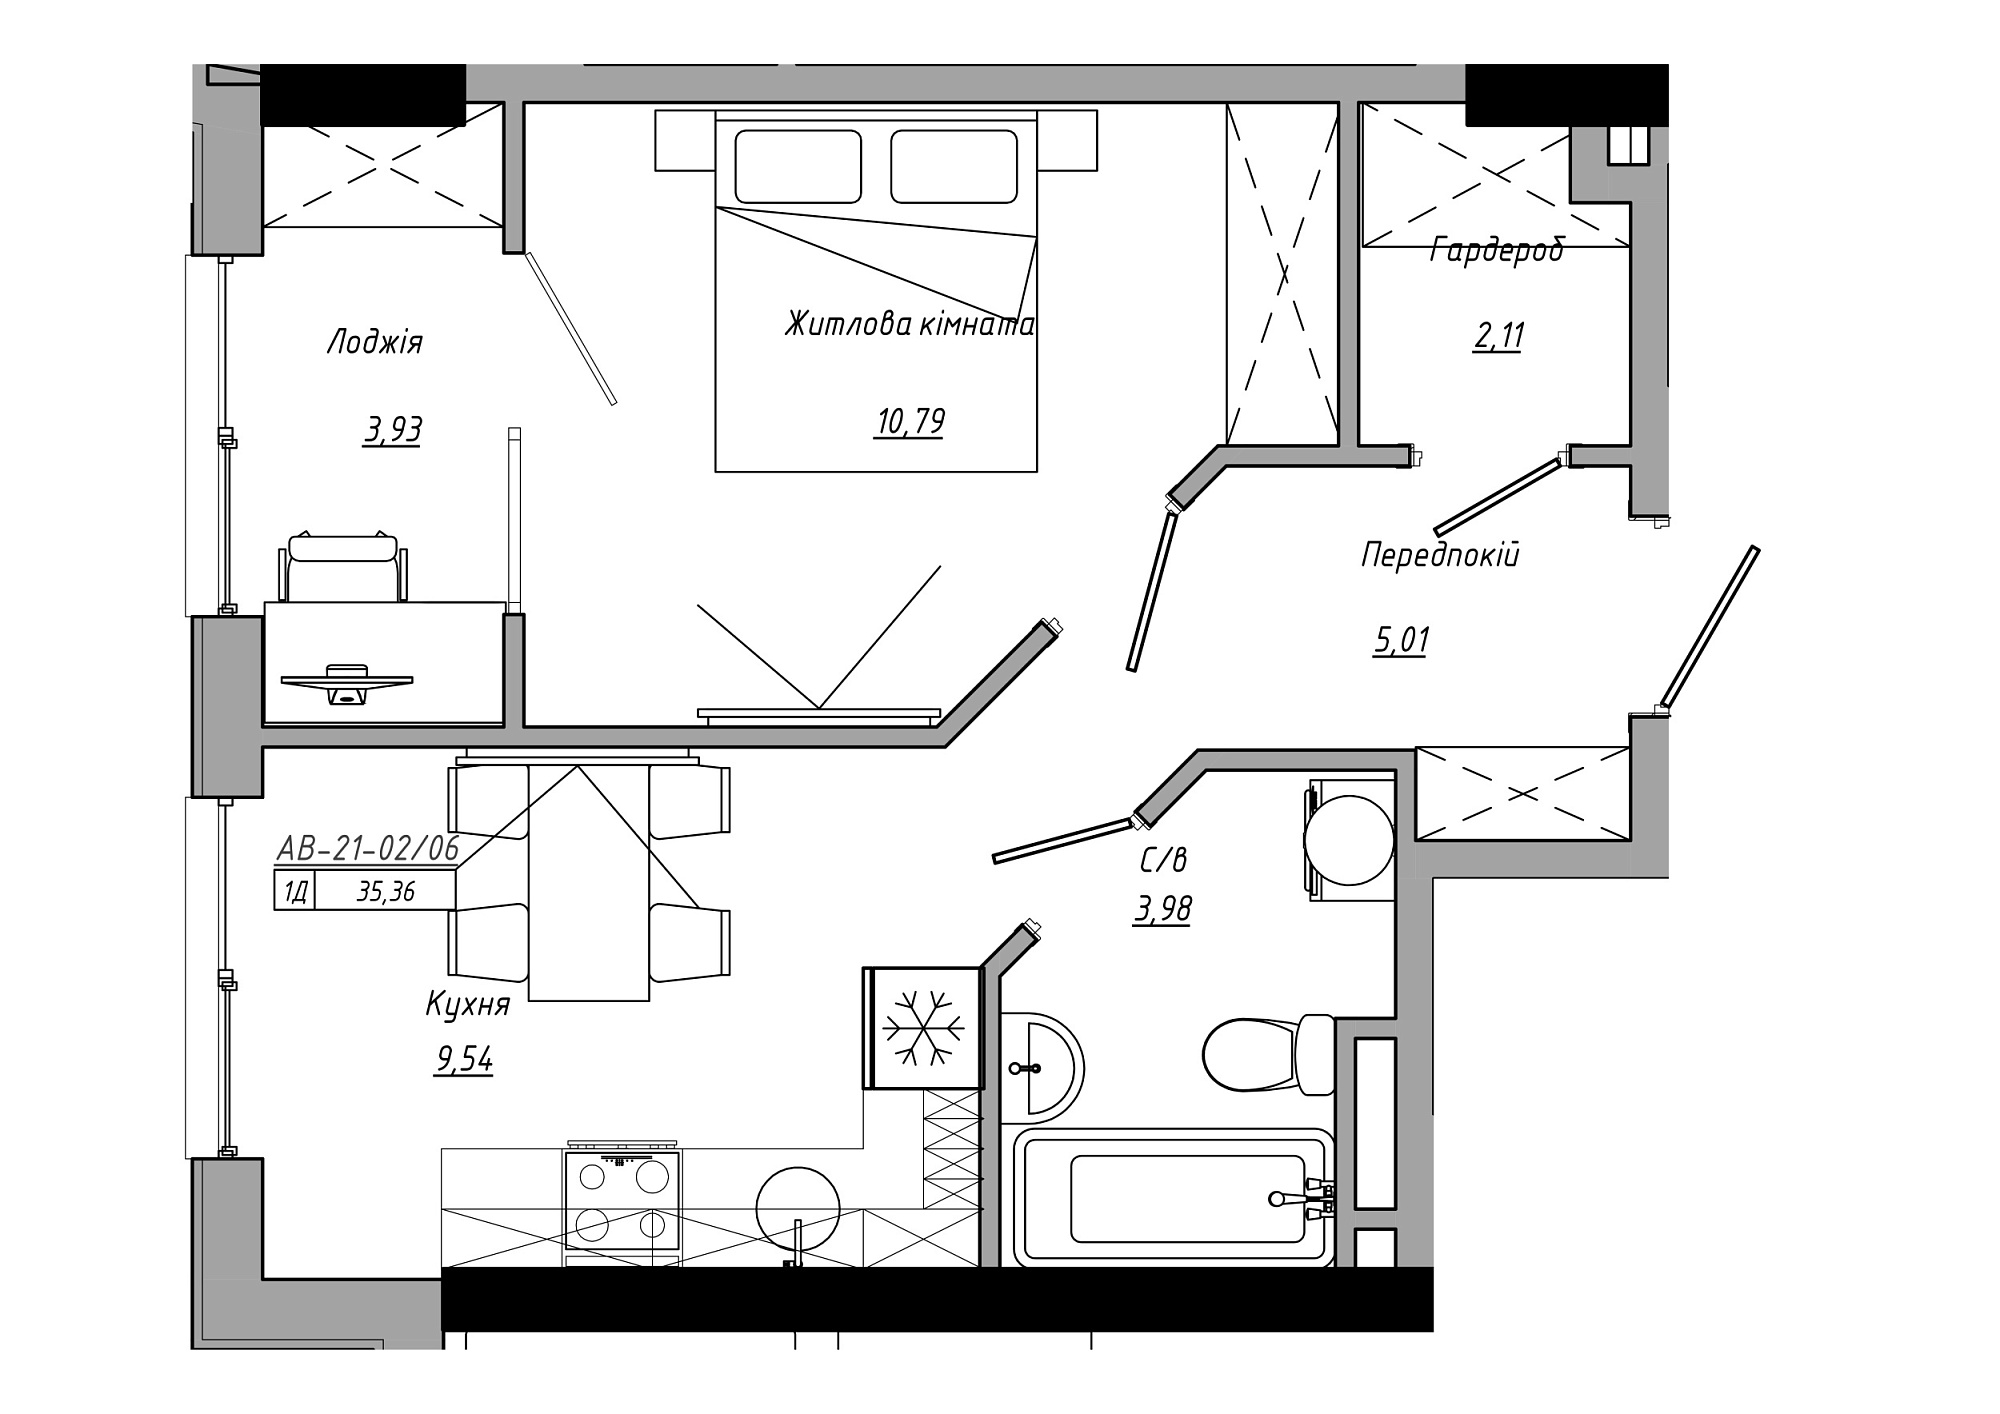 Планування 1-к квартира площею 35.36м2, AB-21-02/00006.